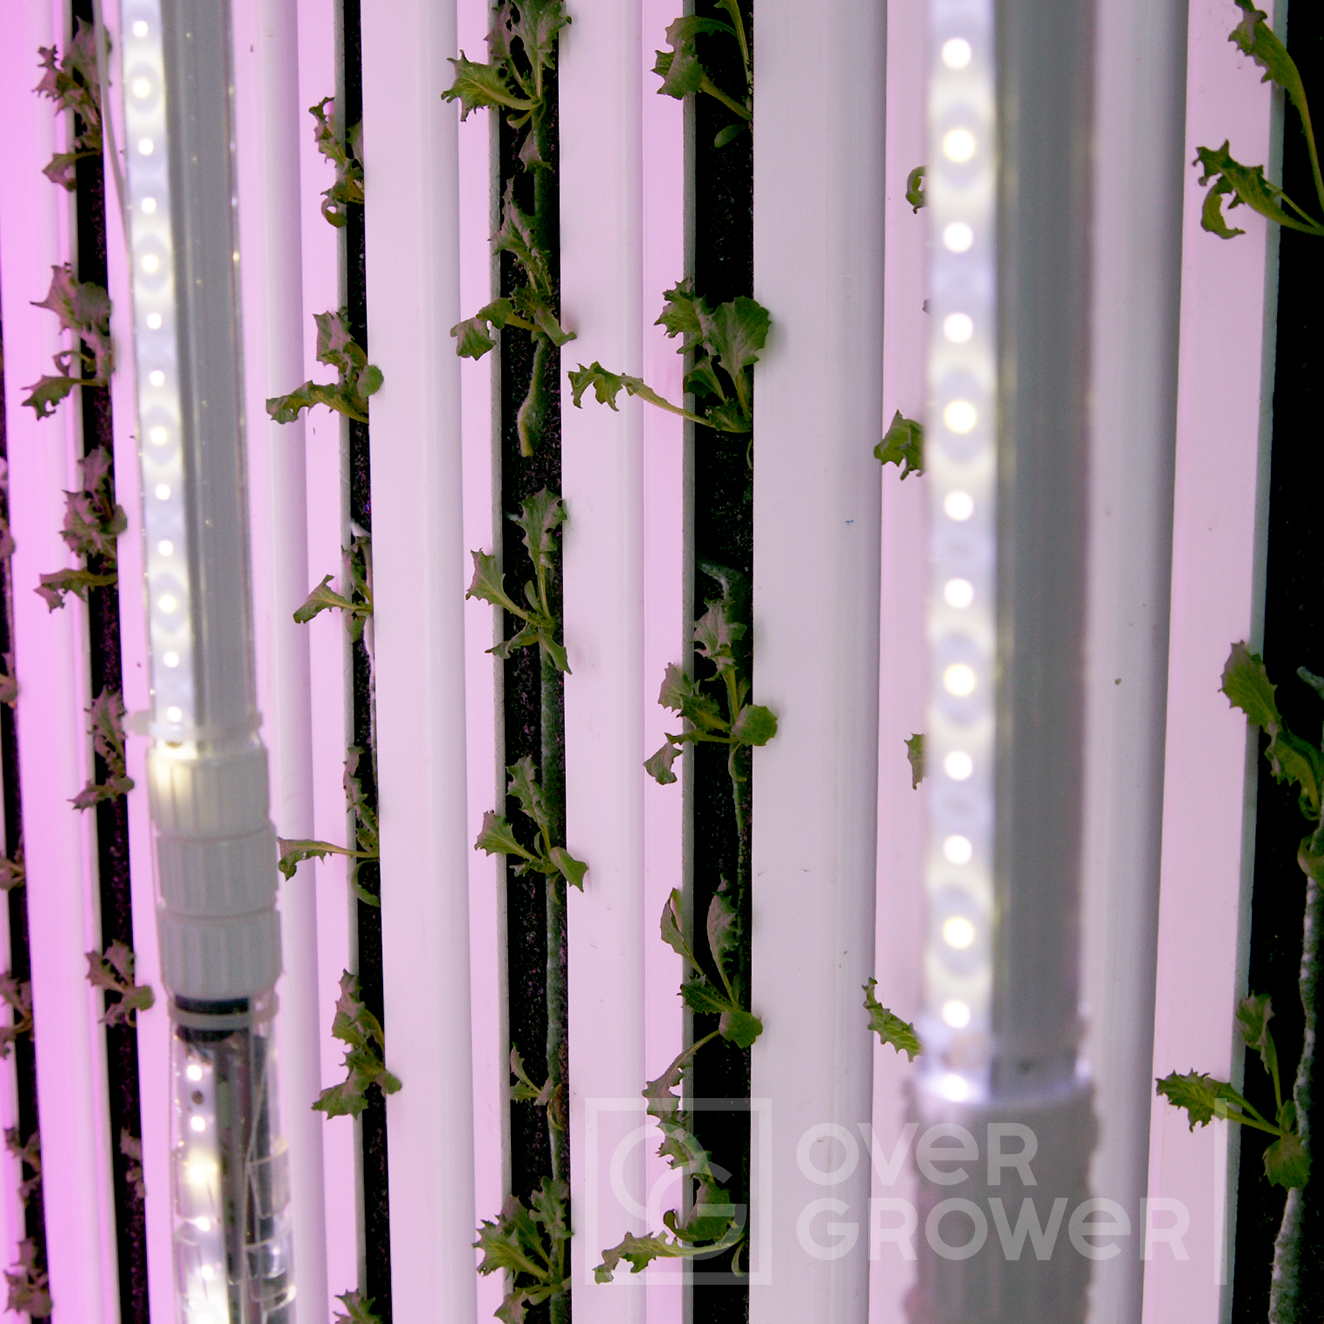 Запустили первую сити-ферму с гидропонной системой GrowPillar и специальными двухсторонними светильниками для выращивания растений